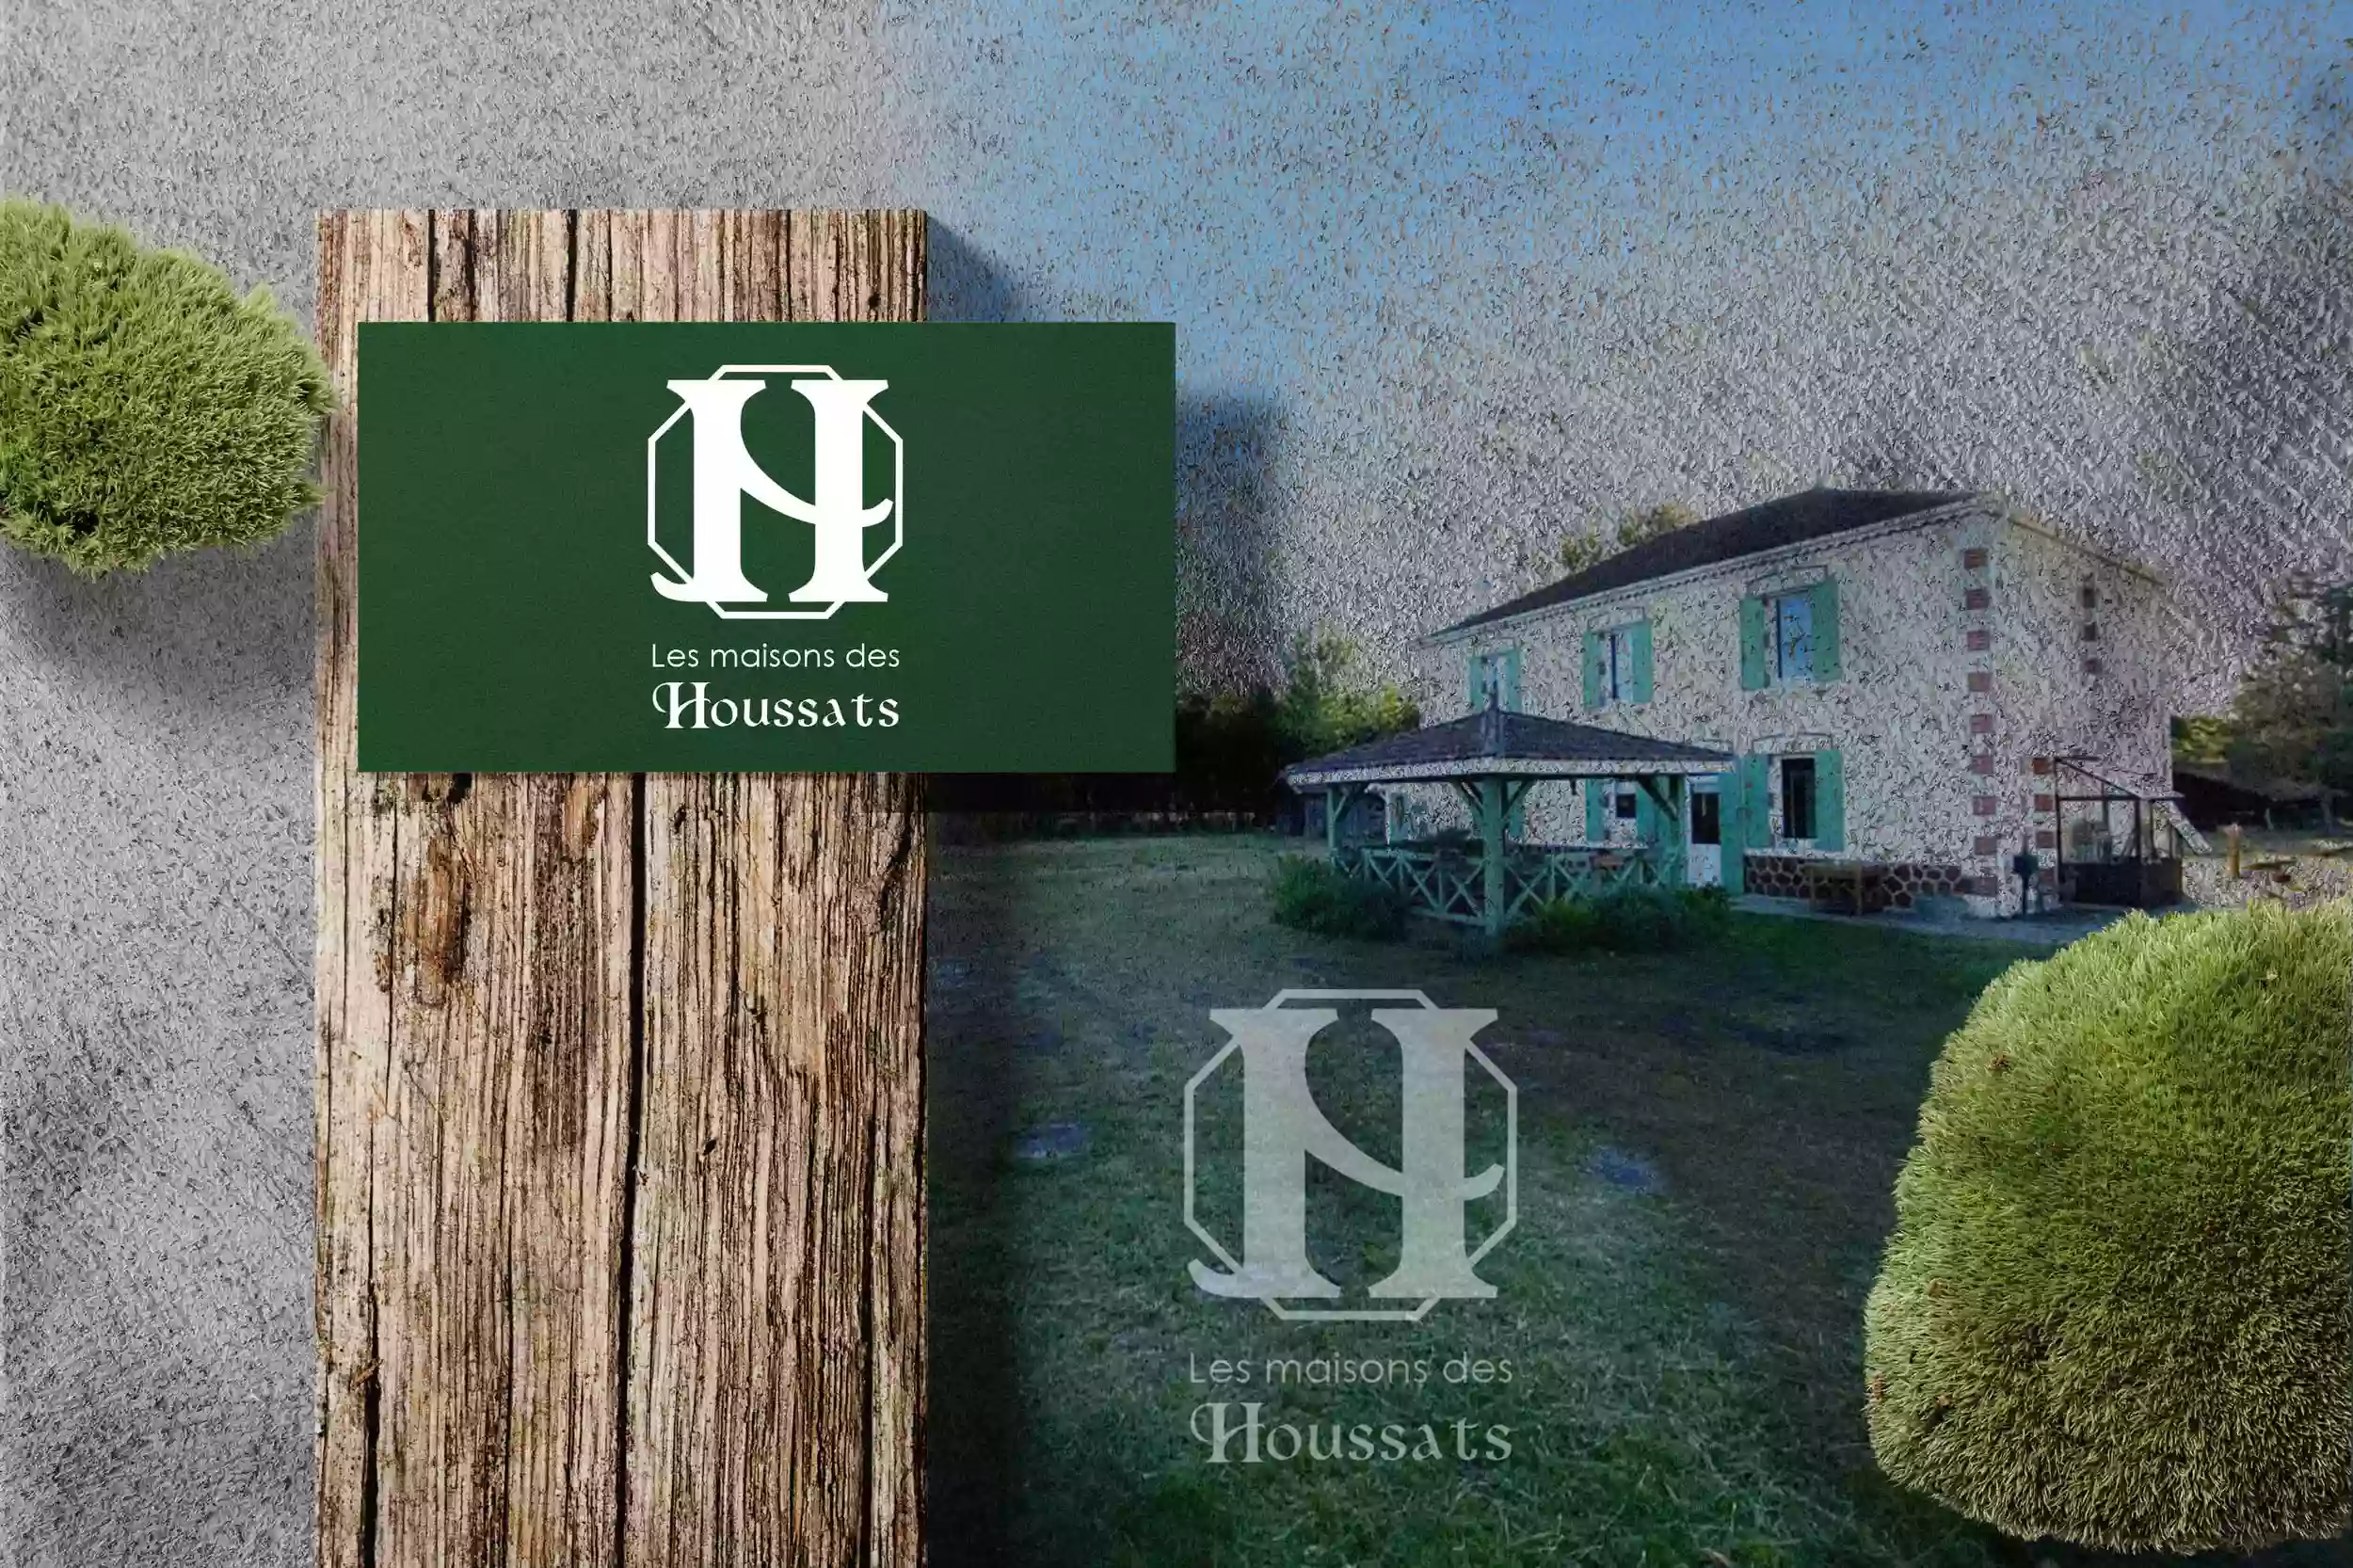 Les maisons des Houssats